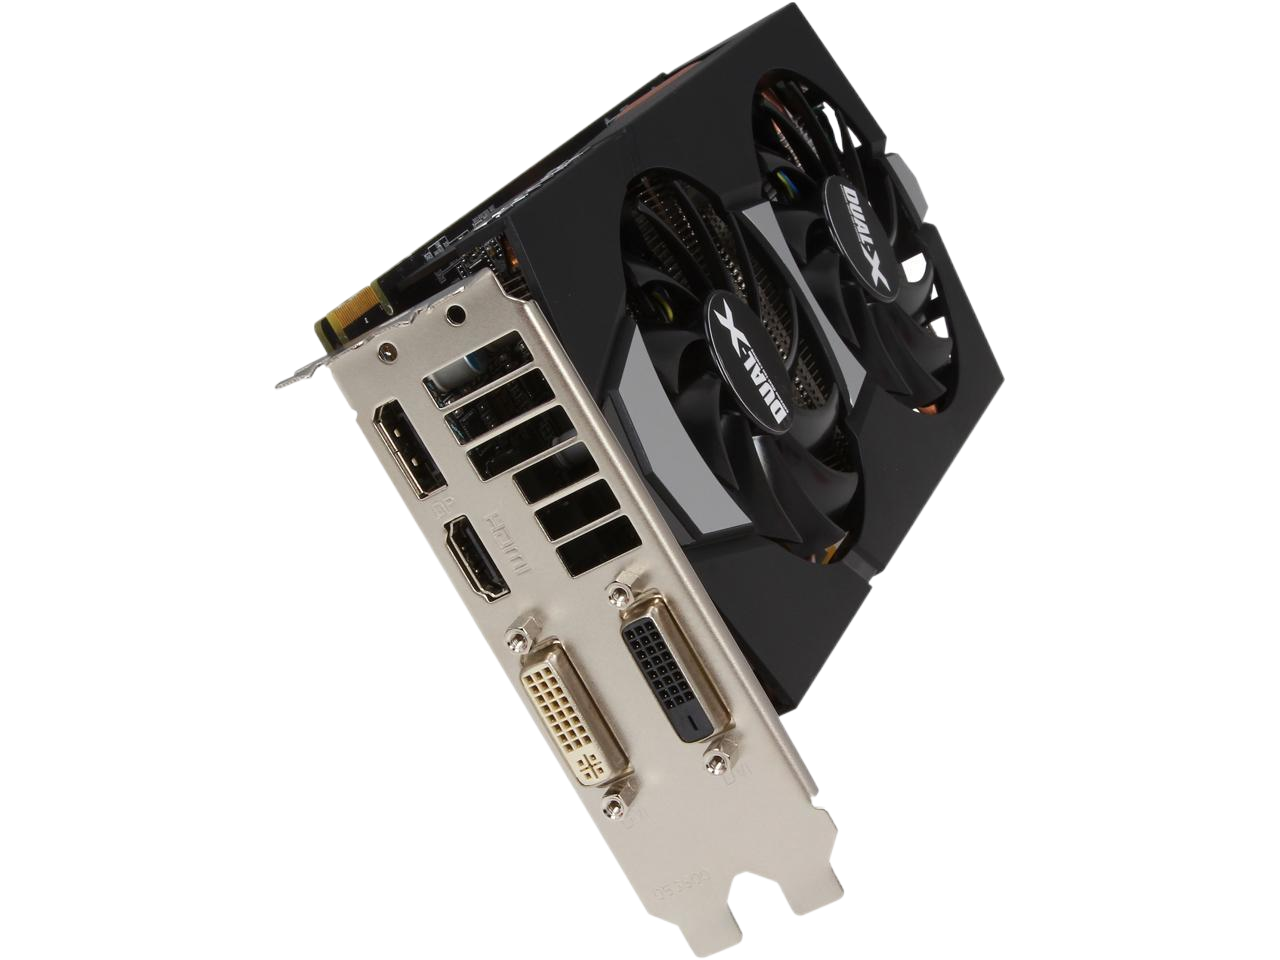 SAPPHIRE DUAL-X OC Radeon HD 7850 2GB GDDR5 PCI Express 3.0 CrossFireX Support Video Card 100355OC-2L